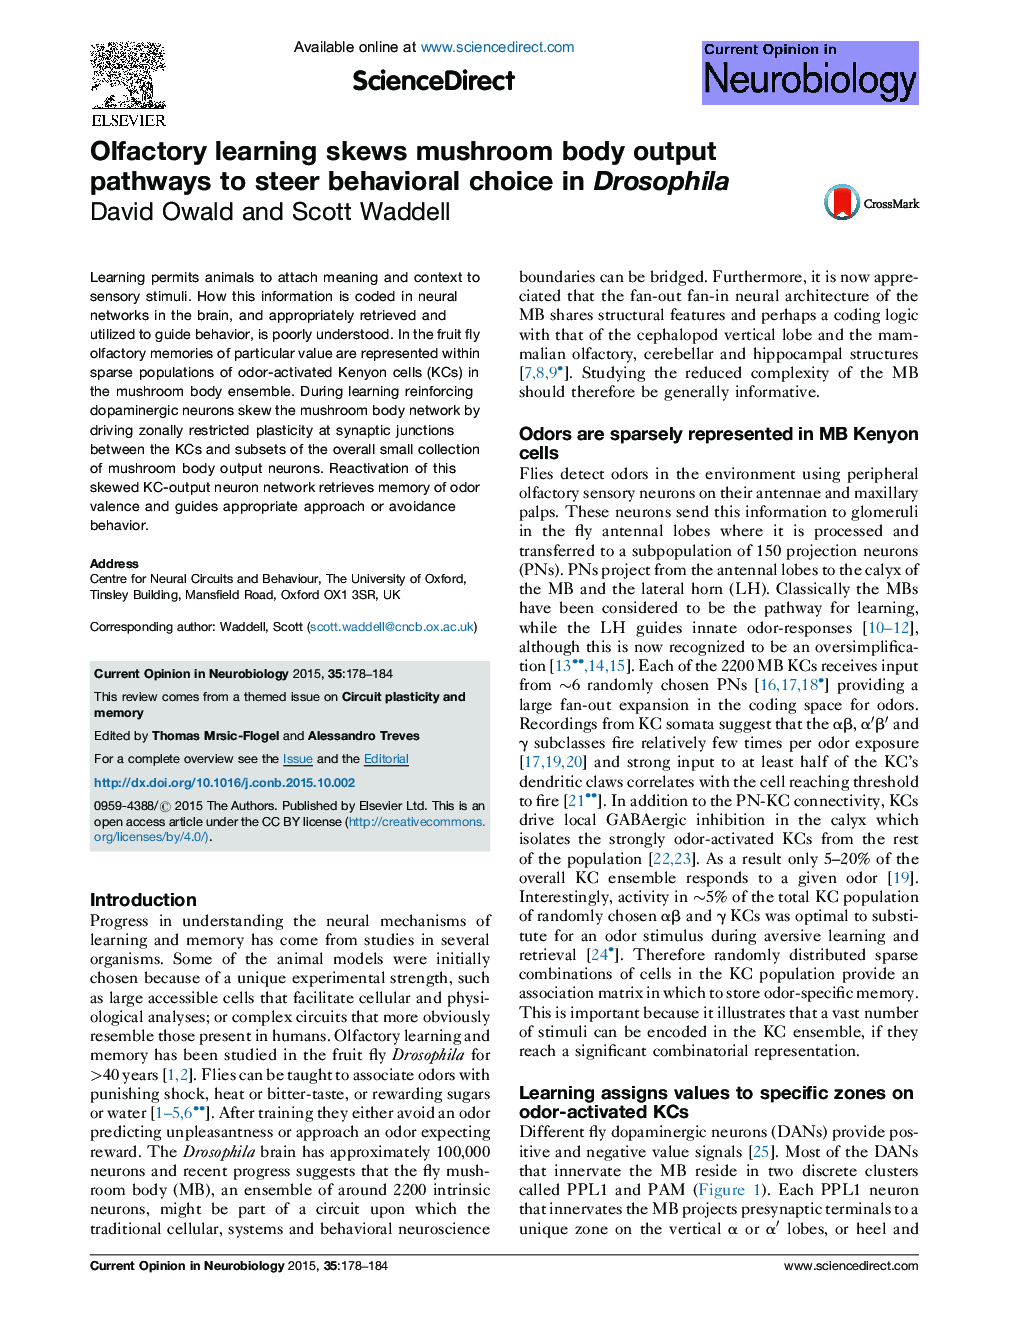 Olfactory learning skews mushroom body output pathways to steer behavioral choice in Drosophila